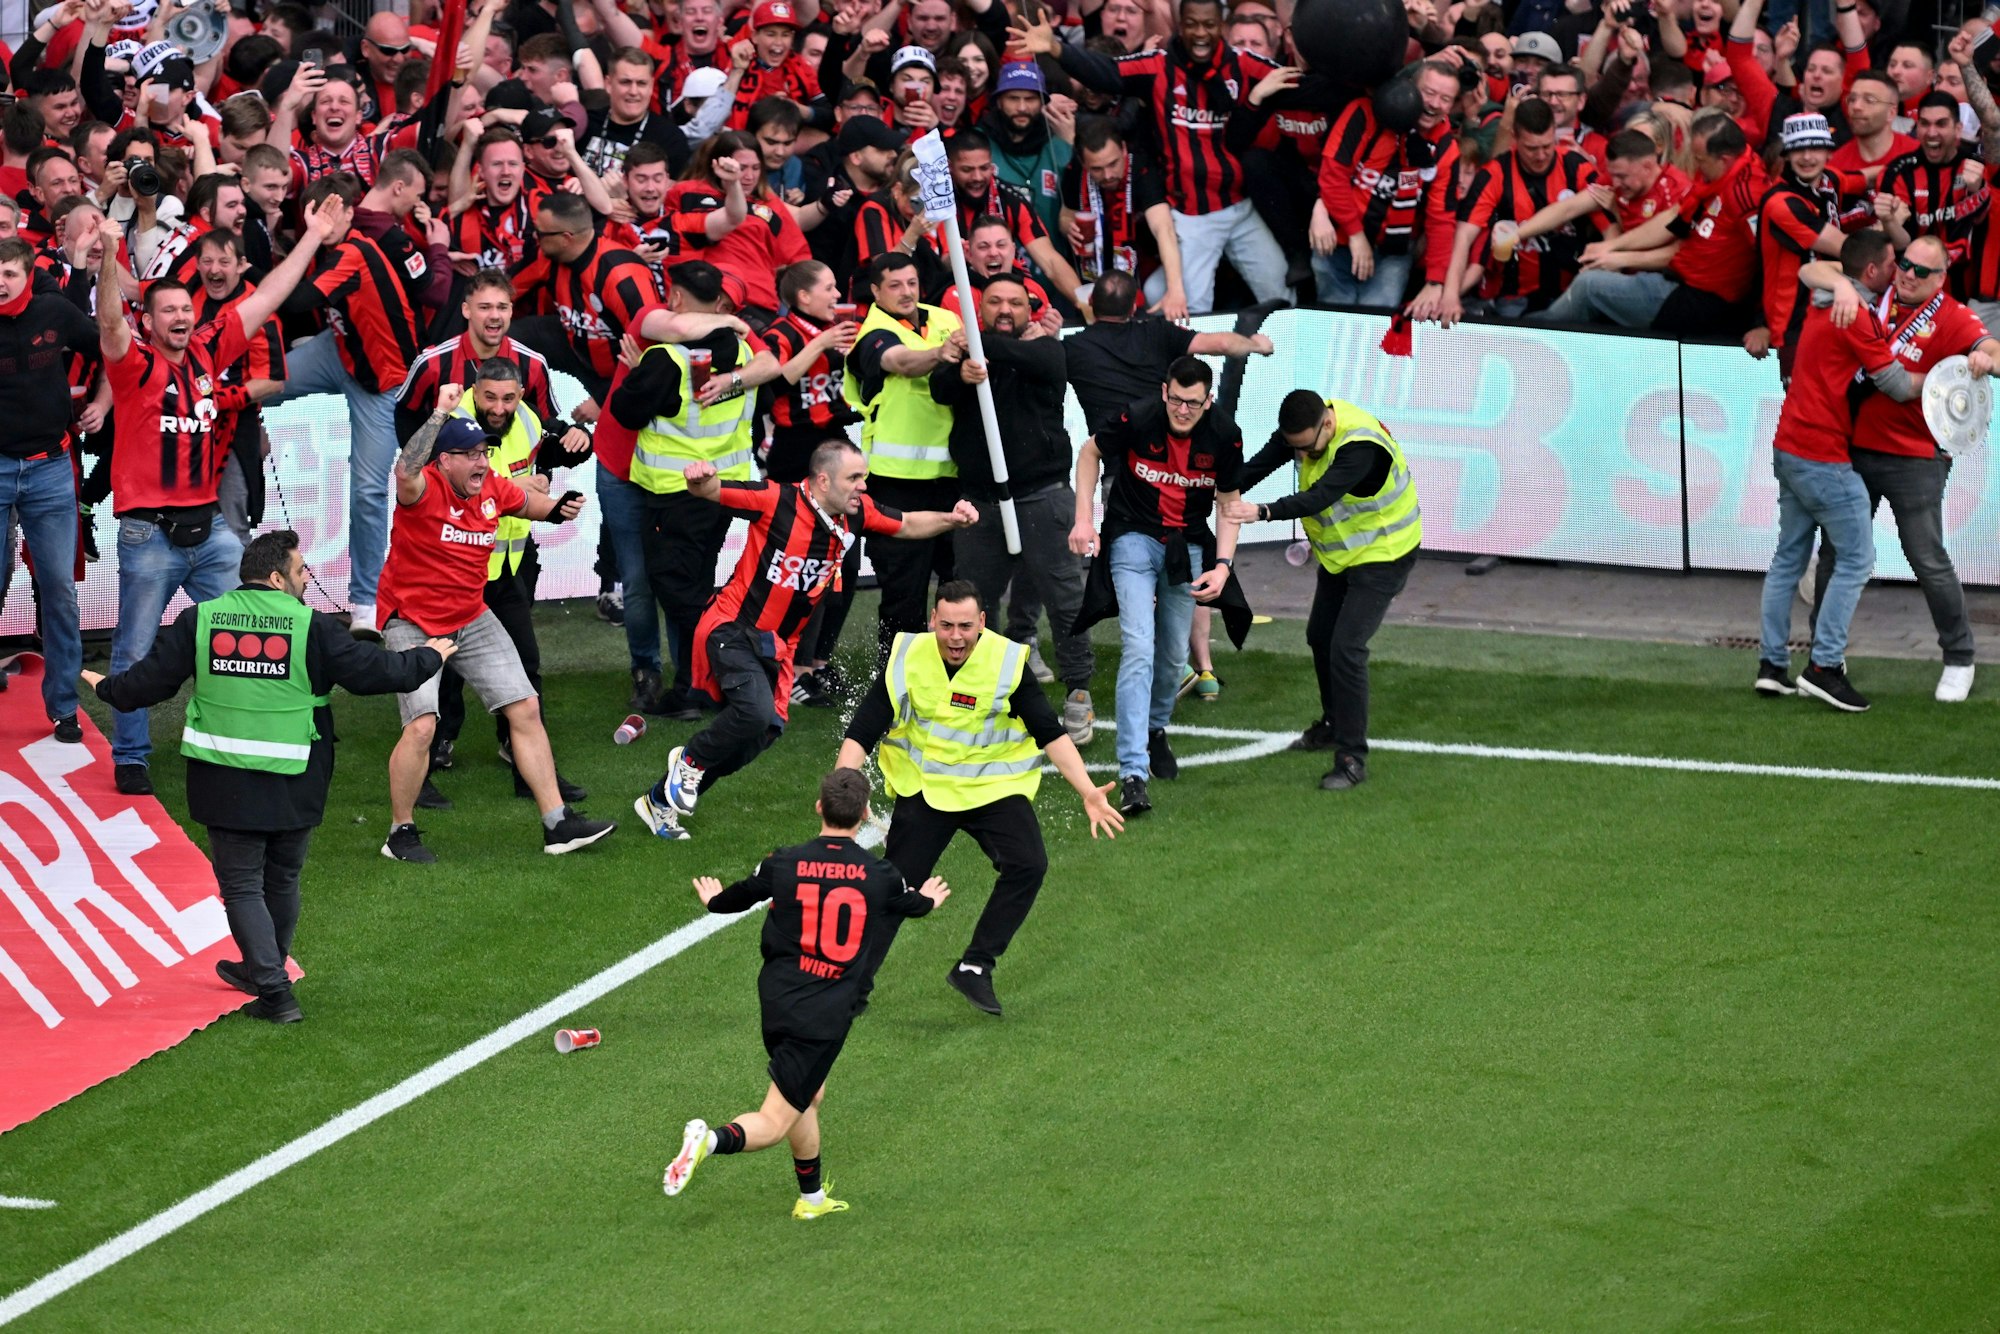 Leverkusens Florian Wirtz (vorne M, #10) dreht nach seinem Tor zum 4:0 jubelnd ab und beruhigt Fans und Sicherheitspersonal, die auf das Spielfeld laufen.